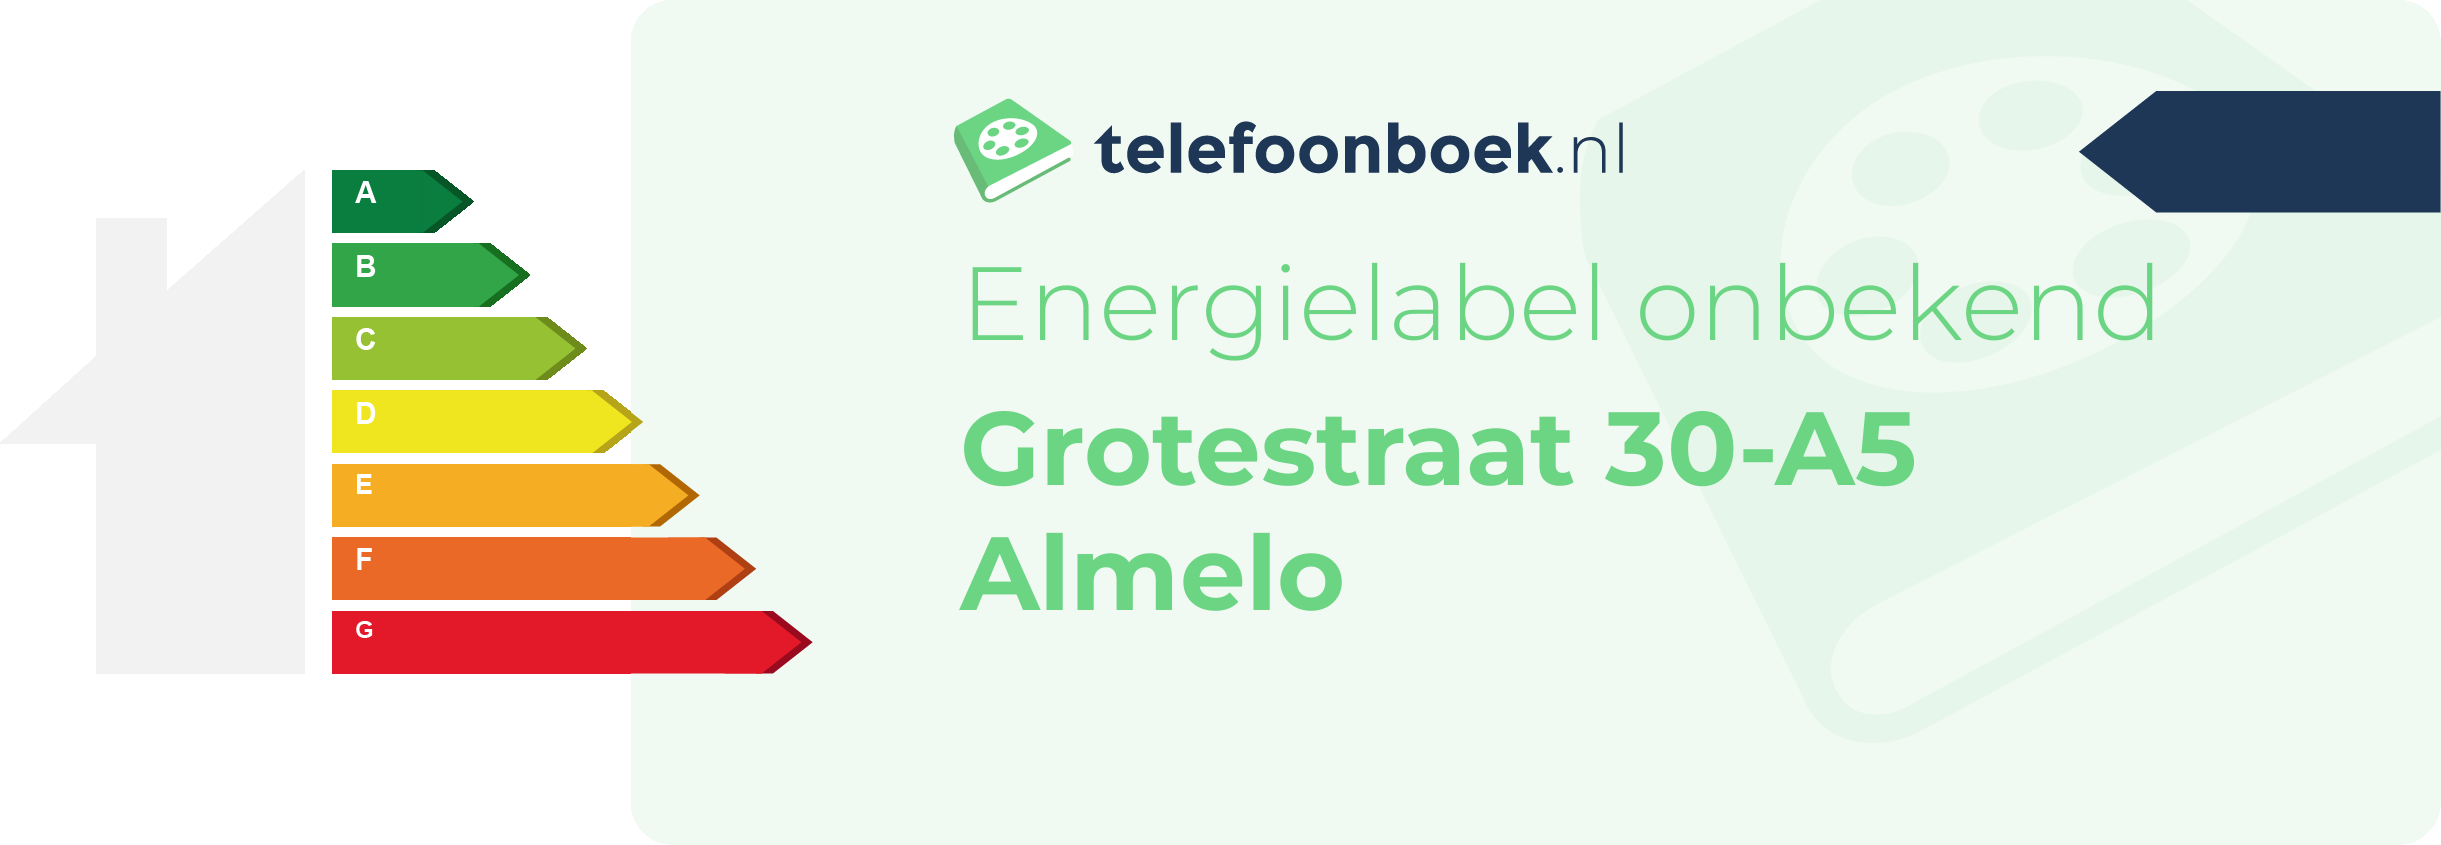 Energielabel Grotestraat 30-A5 Almelo